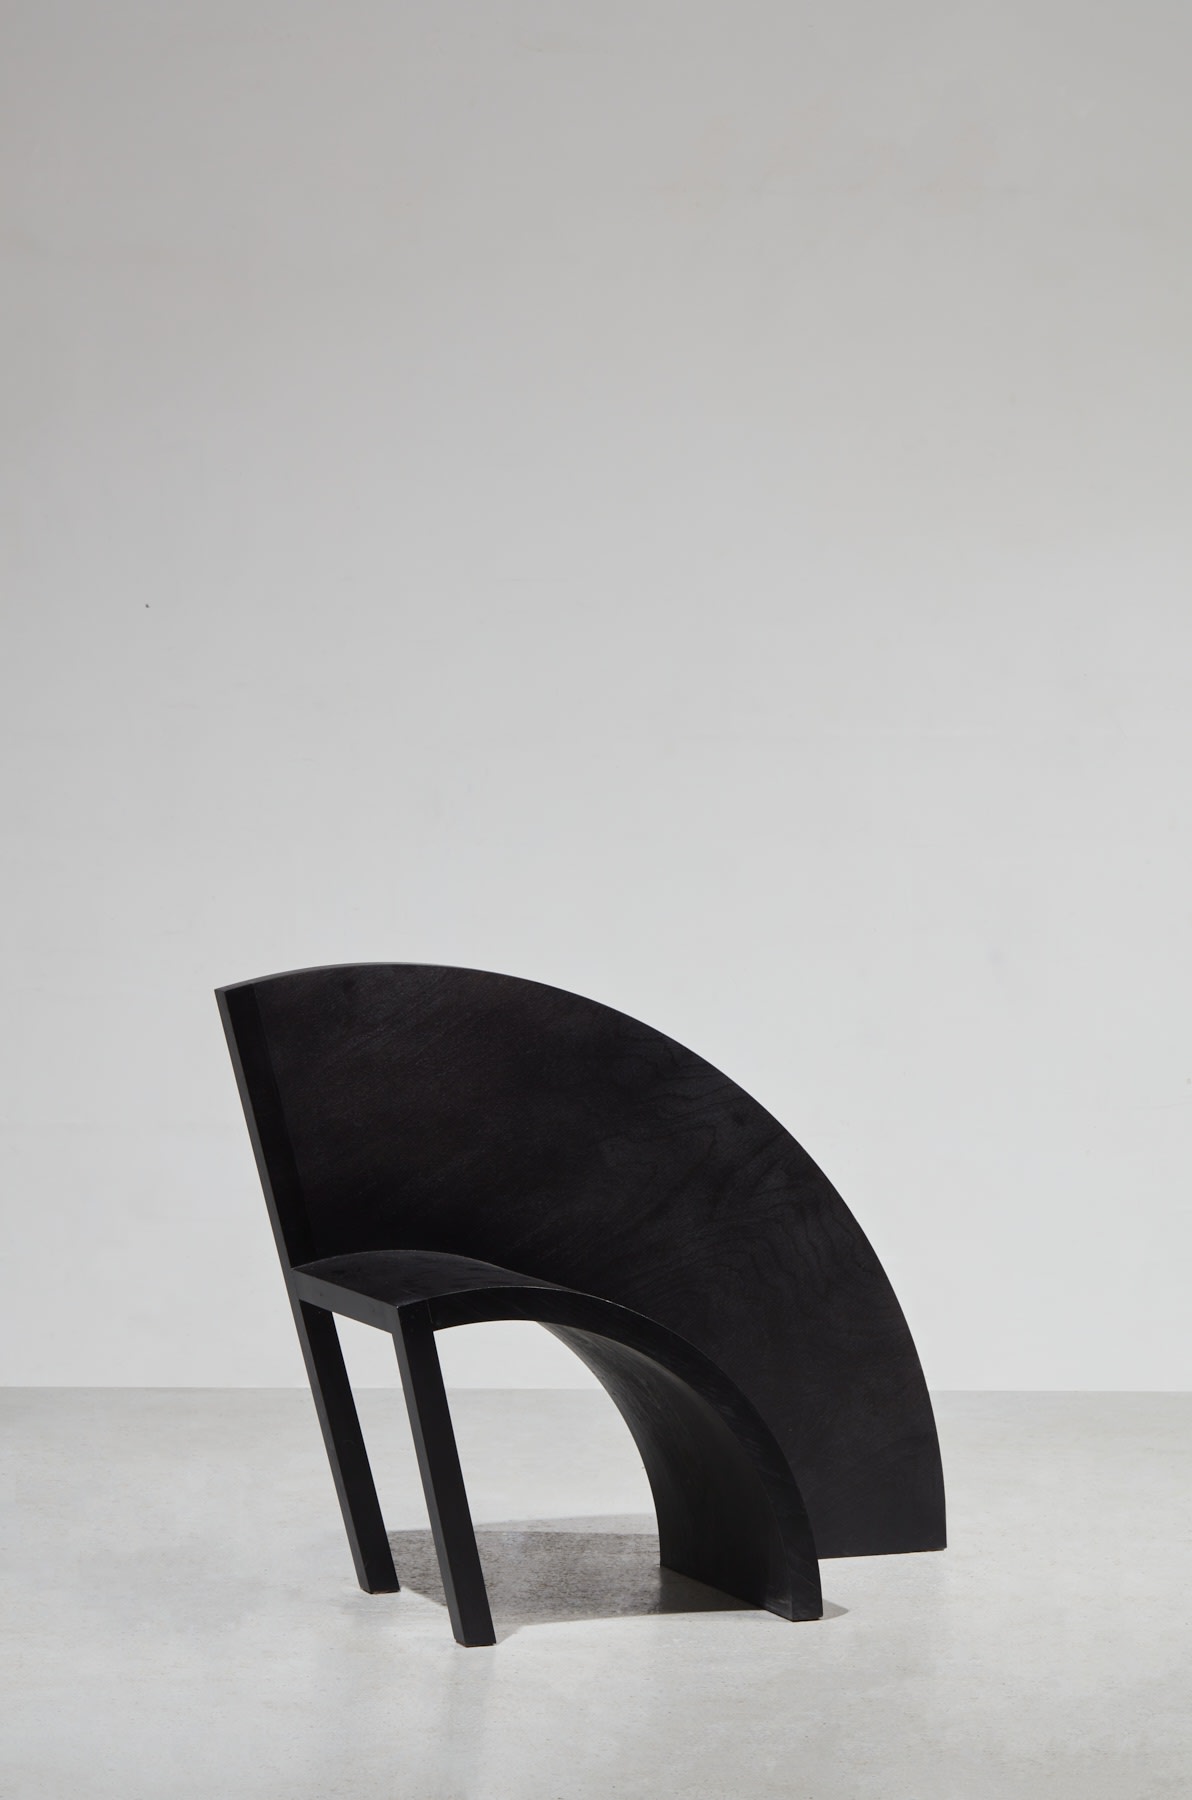 100 sedia in una notte, Sedia 93, Paolo Pallucco © Studio Shapiro